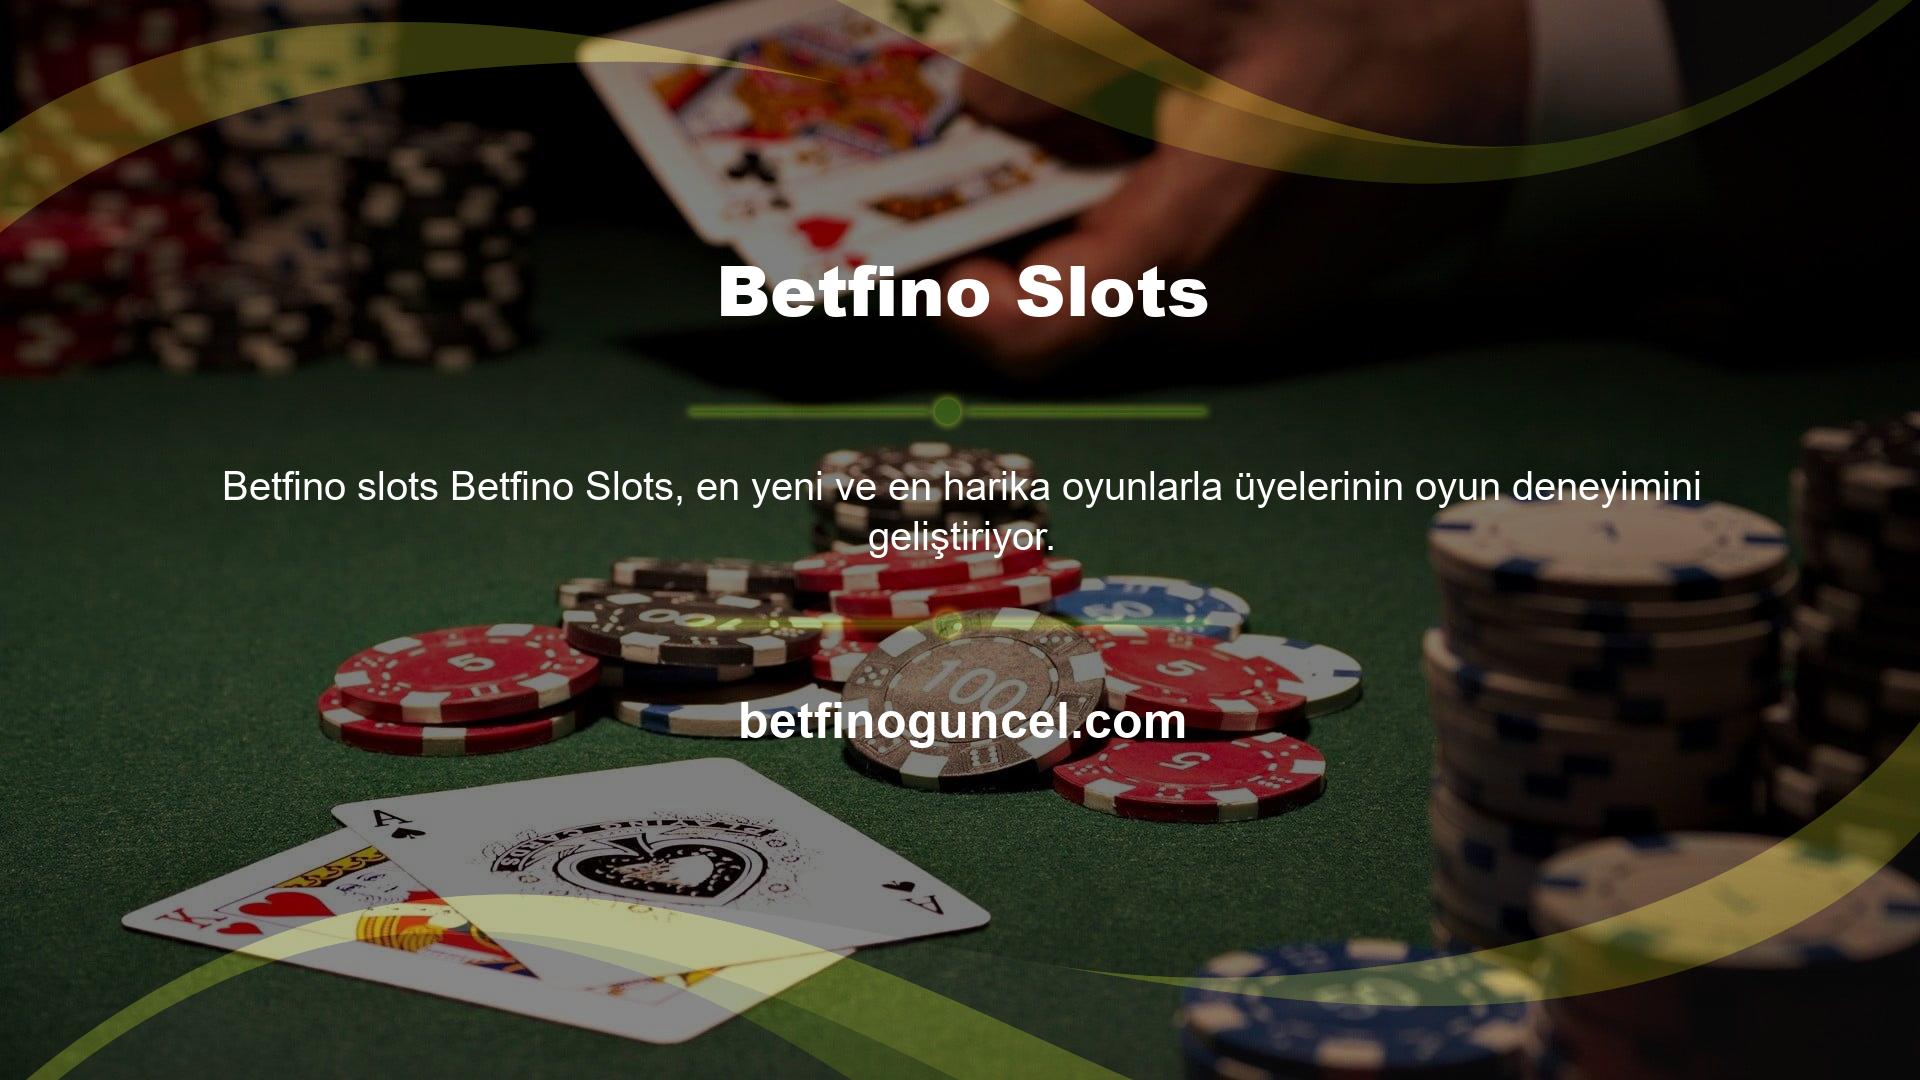 Casino sektöründeki slot makineleri her zaman yüksek kazanç ve bonuslar sunan oyunlardır